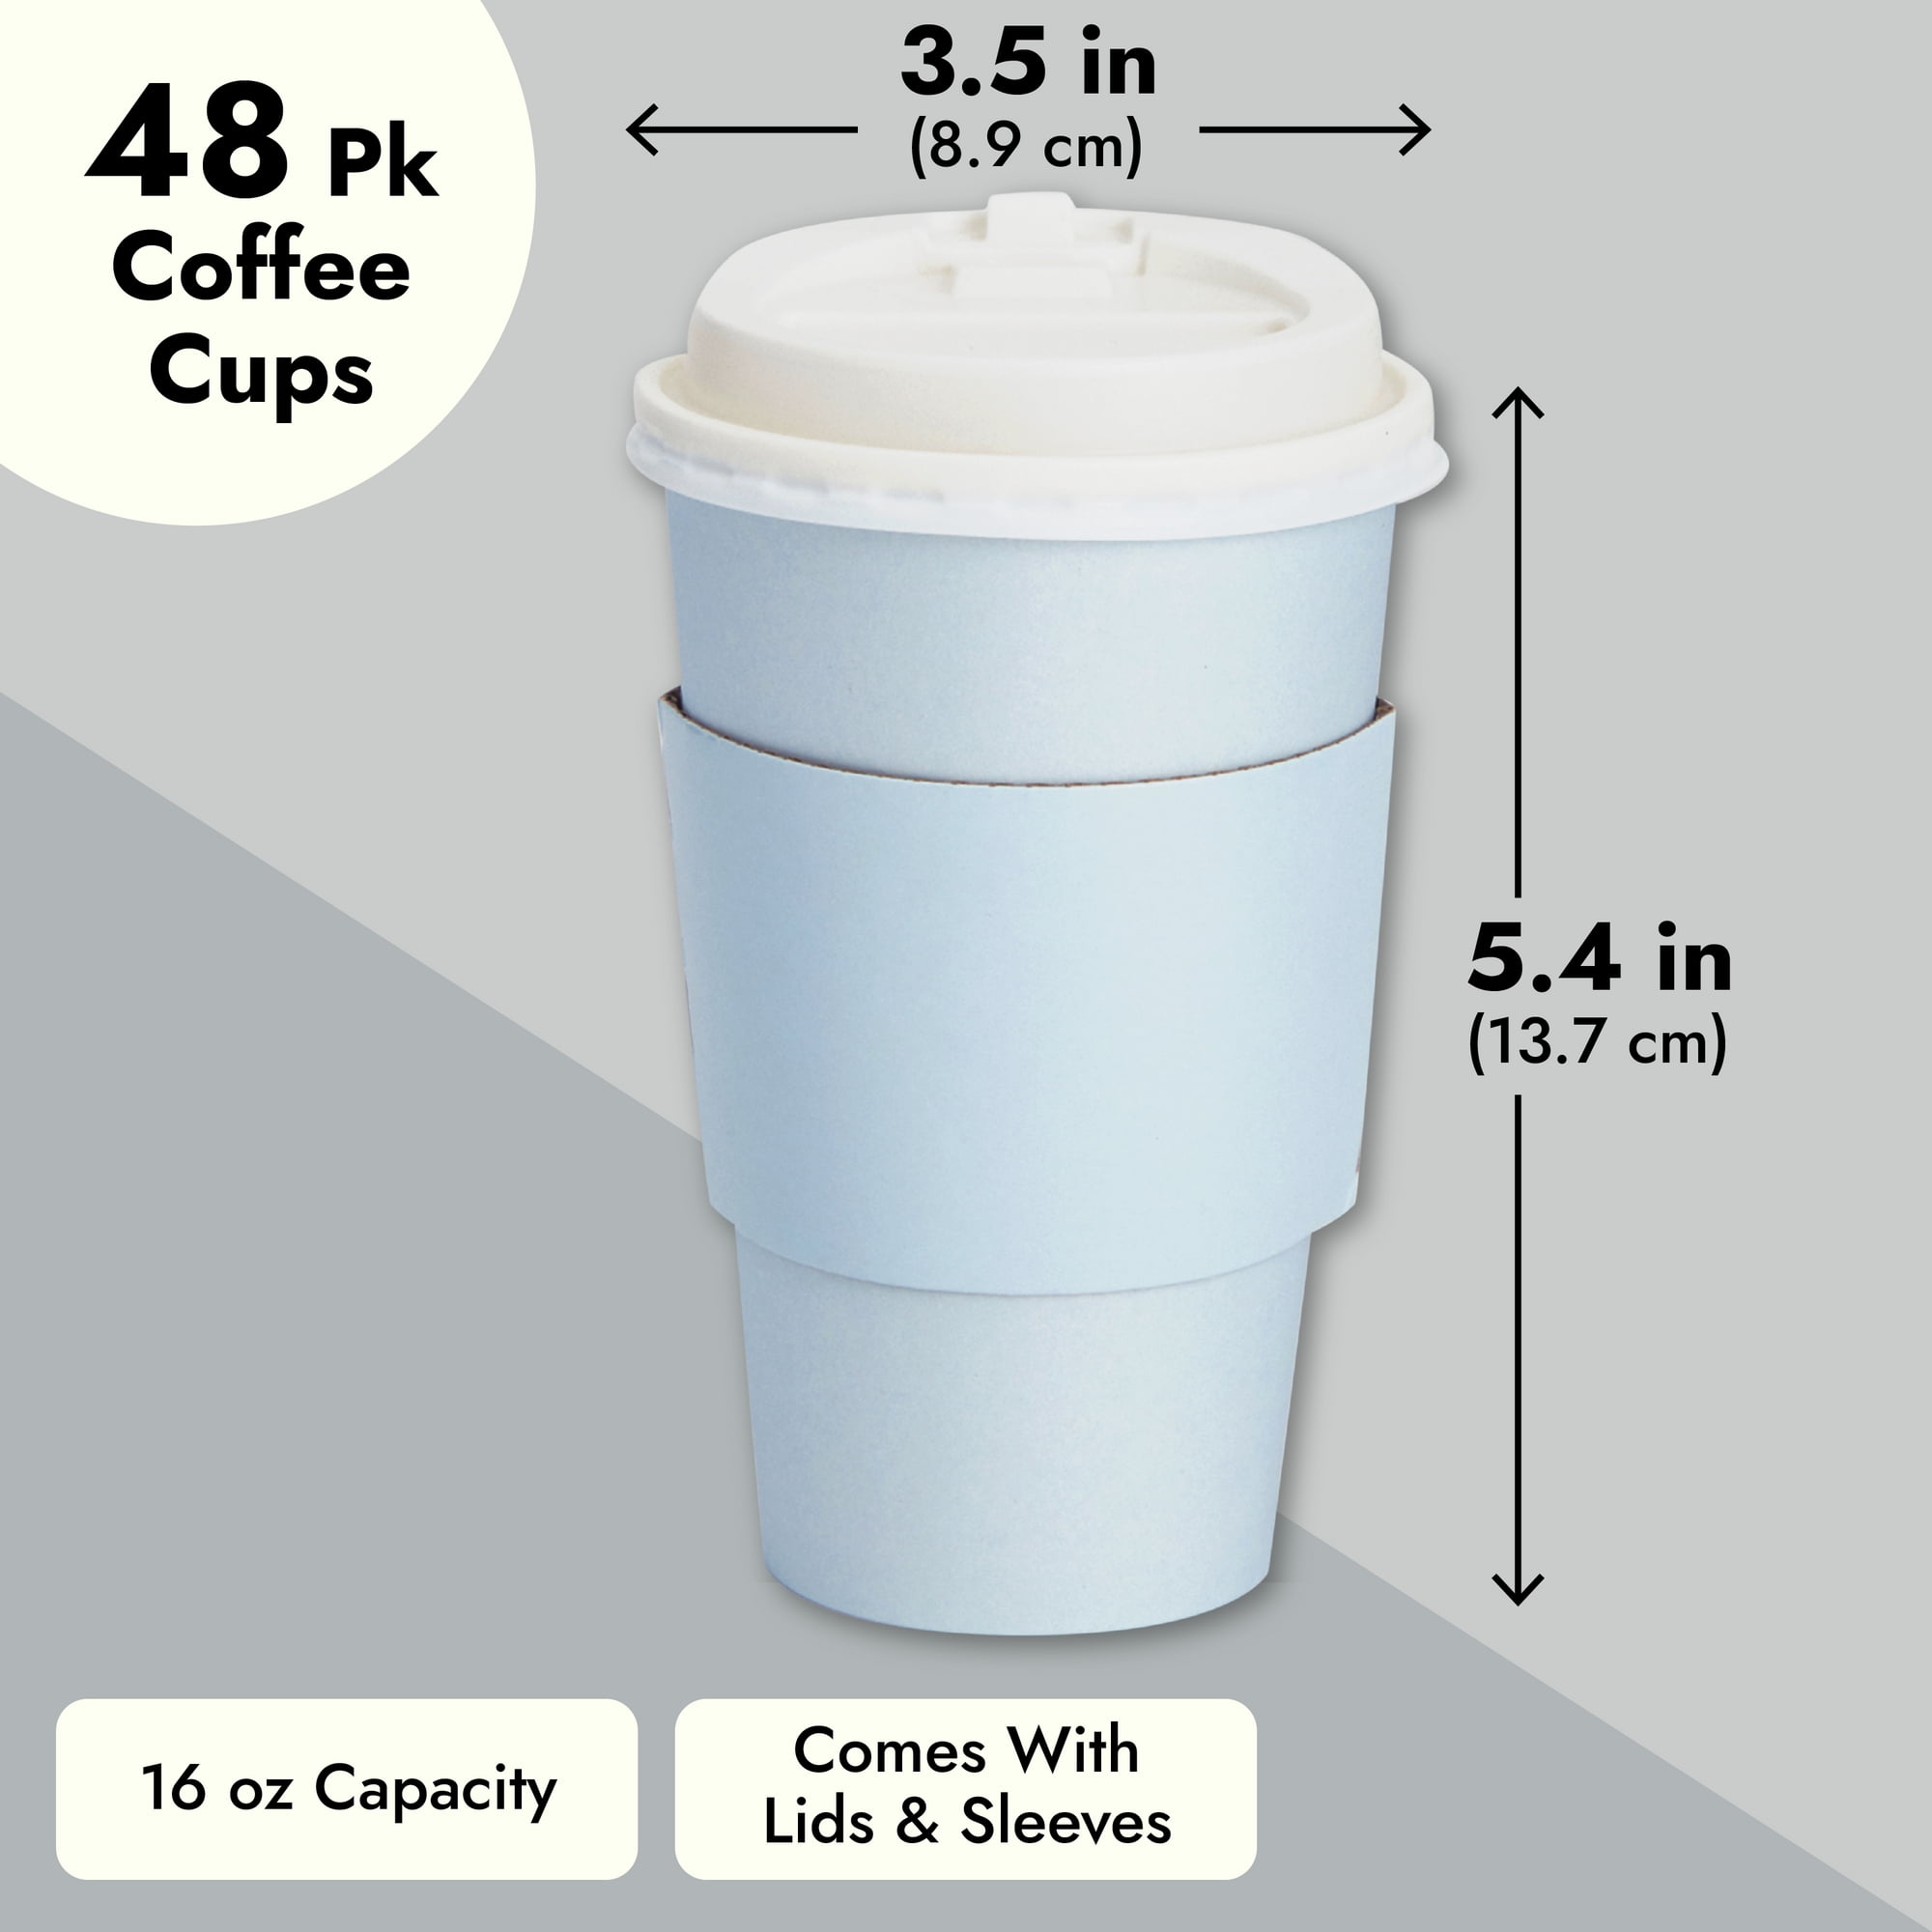 OpTempo Insulated Coffee Mug / Beer Mug - 16 oz — OpTempo Training Group